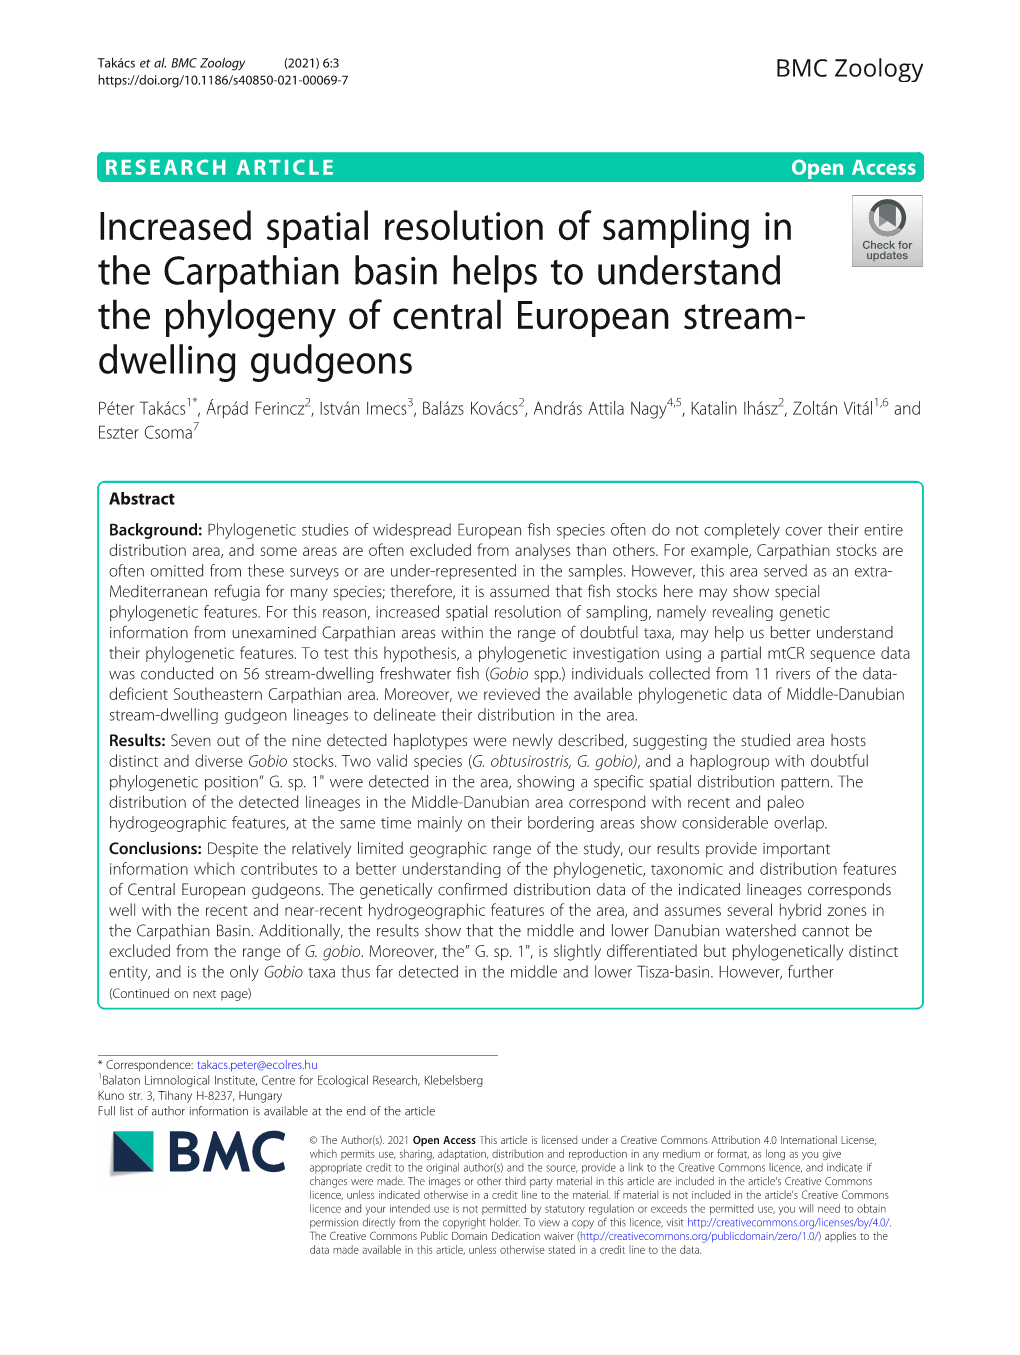 Increased Spatial Resolution of Sampling in the Carpathian Basin